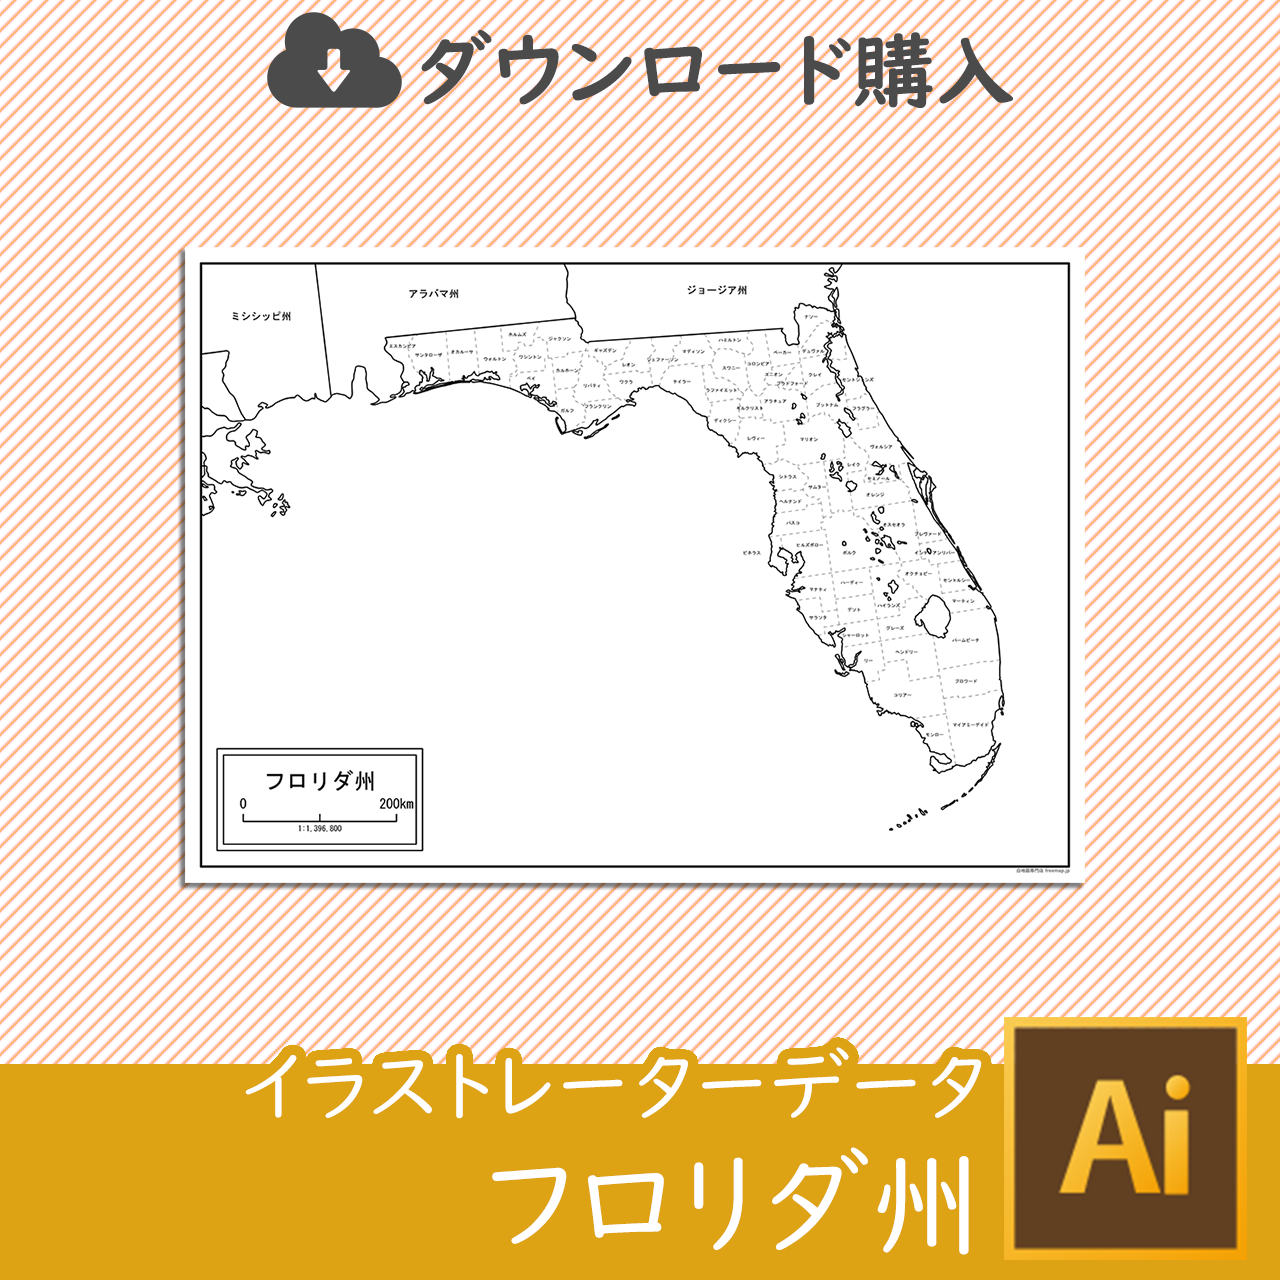 フロリダ州の白地図データのサムネイル画像